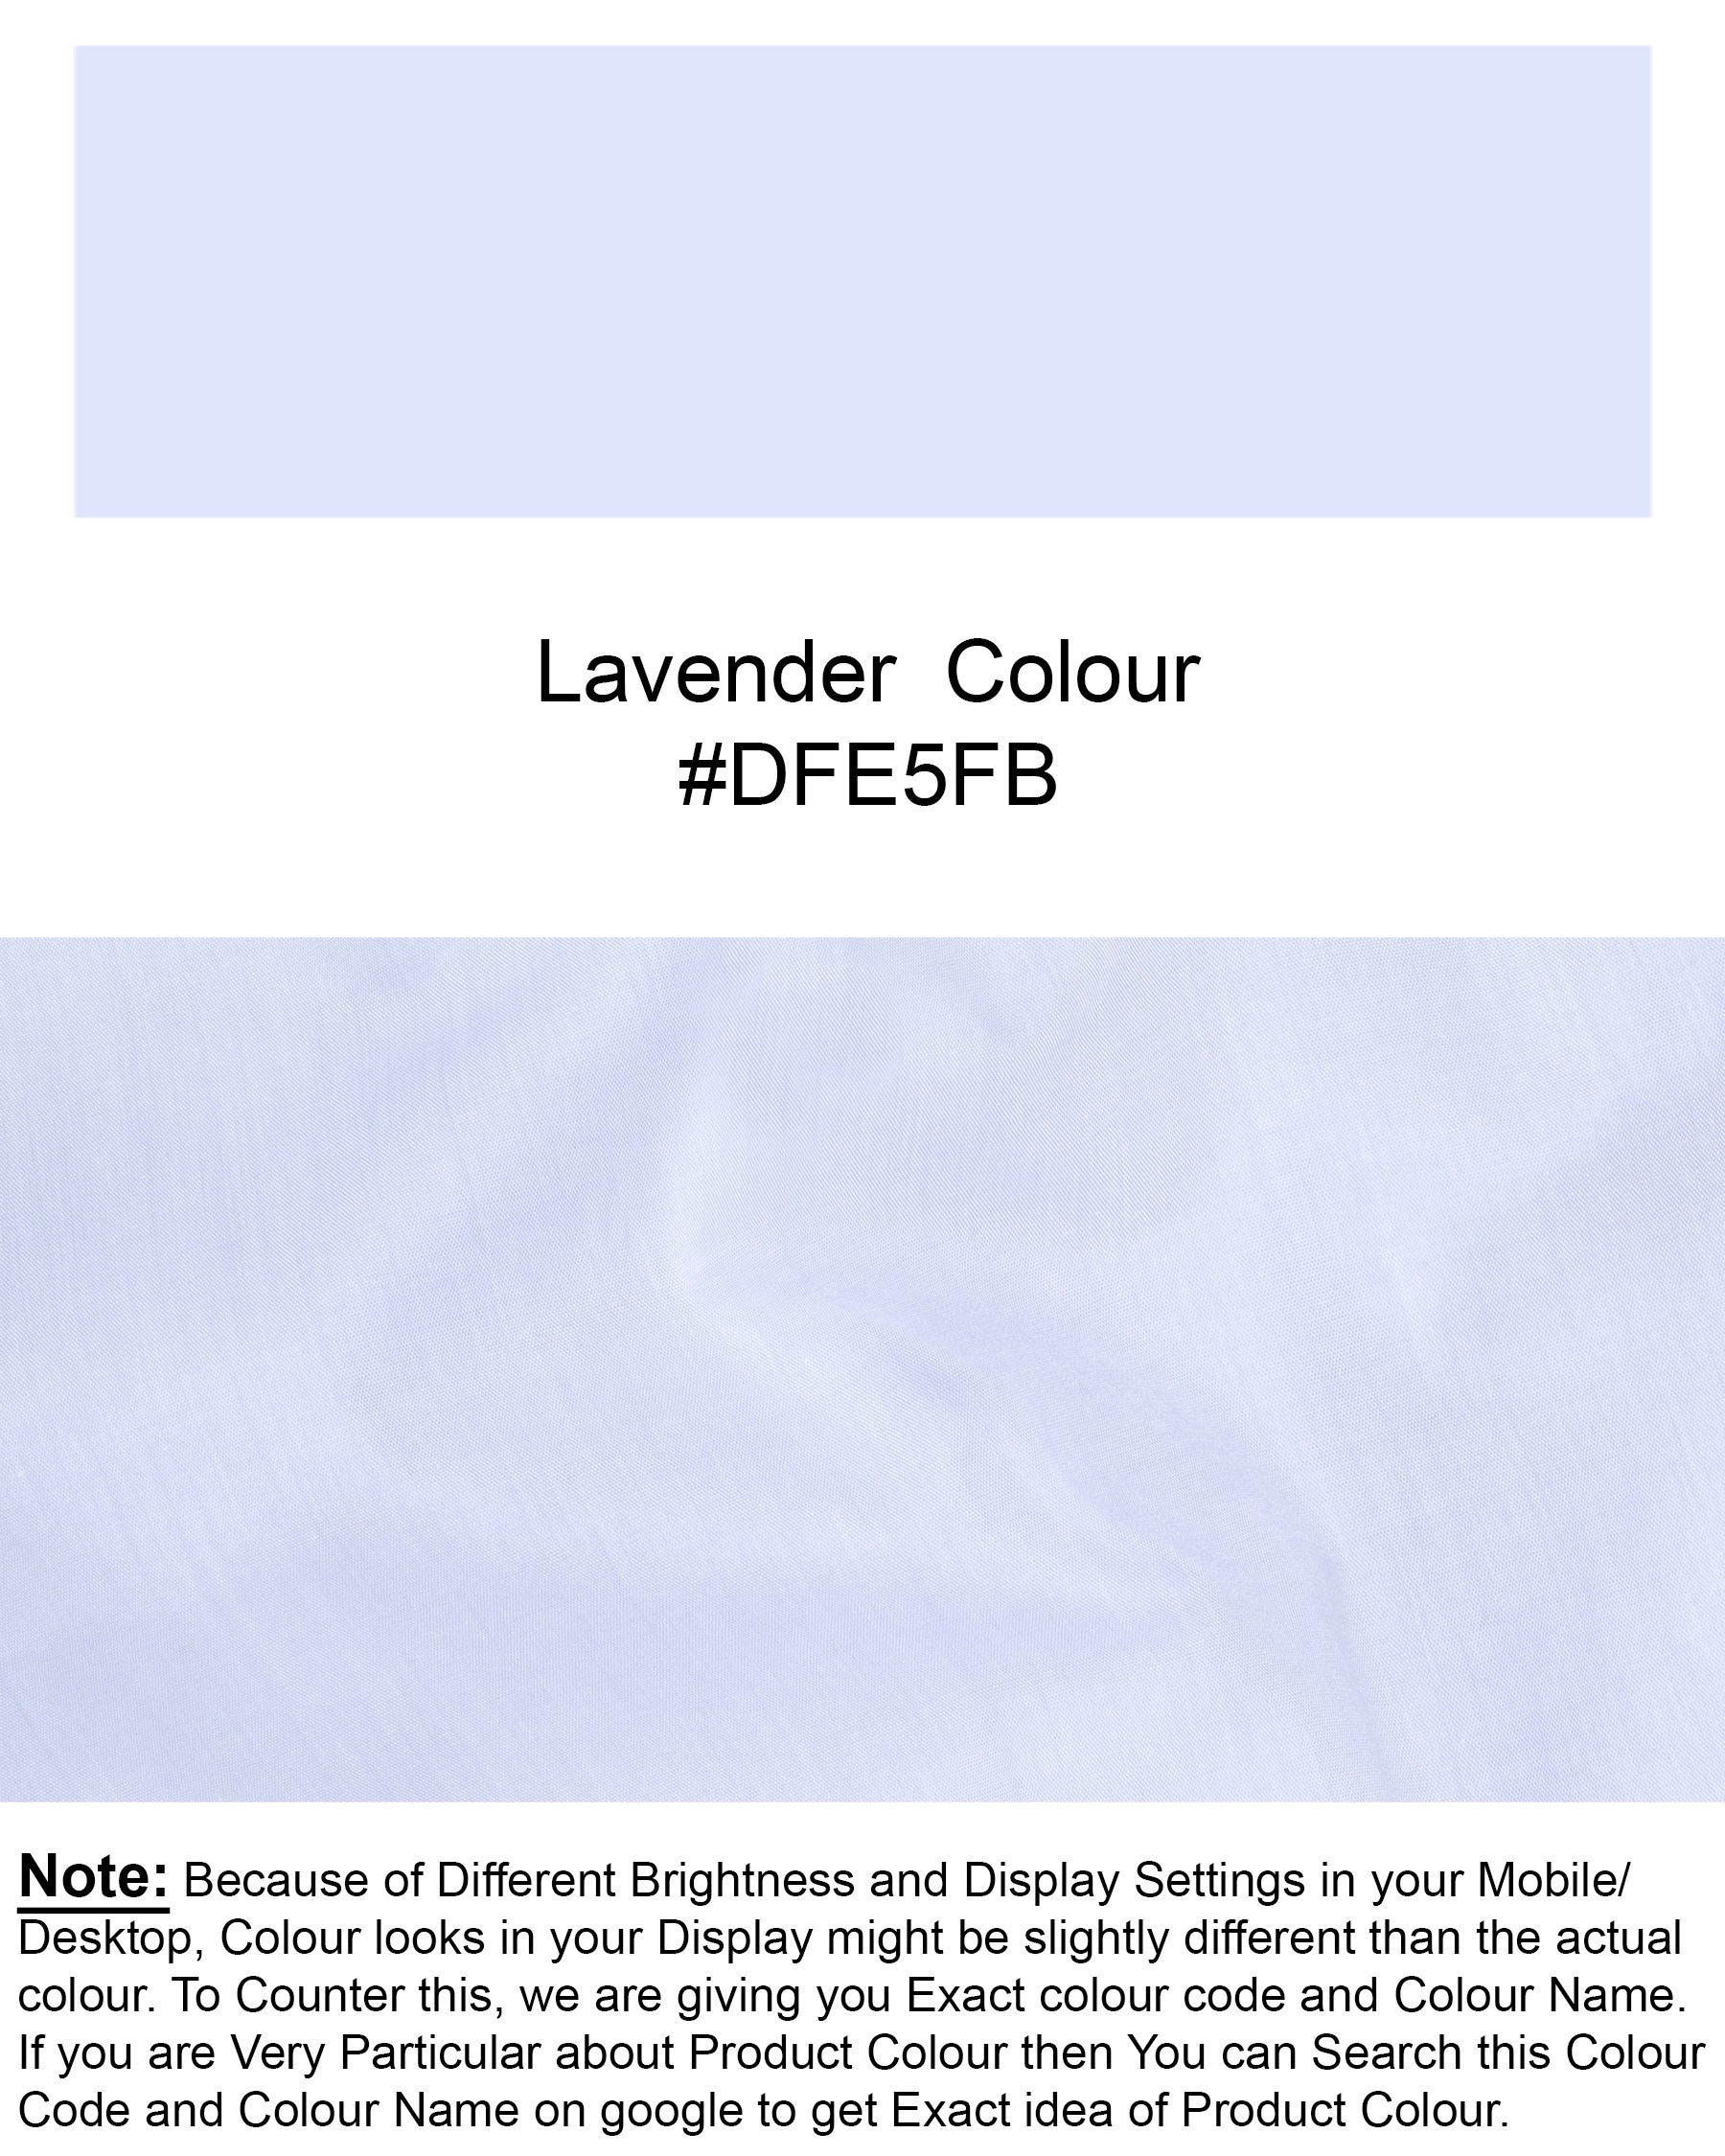 Lavender Blue Premium Cotton Shirt 6956-BD-38,6956-BD-38,6956-BD-39,6956-BD-39,6956-BD-40,6956-BD-40,6956-BD-42,6956-BD-42,6956-BD-44,6956-BD-44,6956-BD-46,6956-BD-46,6956-BD-48,6956-BD-48,6956-BD-50,6956-BD-50,6956-BD-52,6956-BD-52